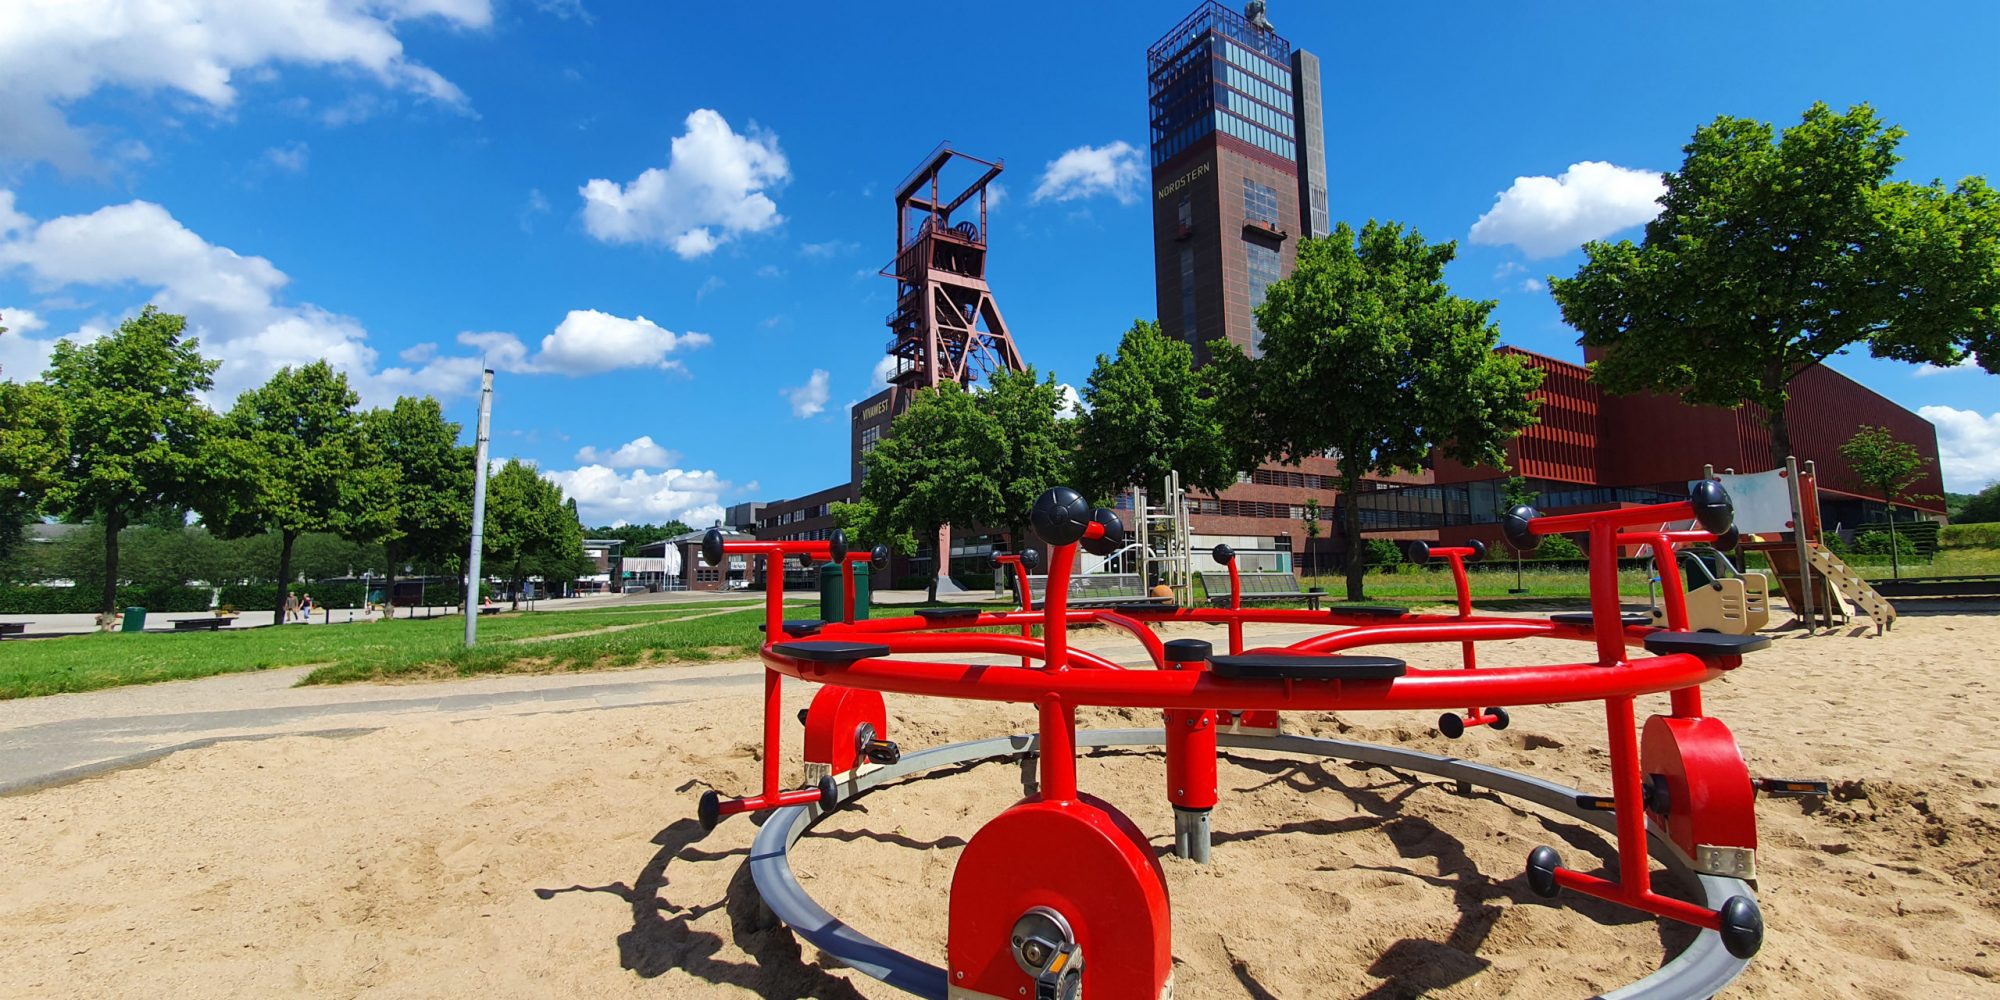 Ein Kinderspielplatz im Nordsternpark mit den Förderanlagen der ehemaligen Zeche im Hintergrund.